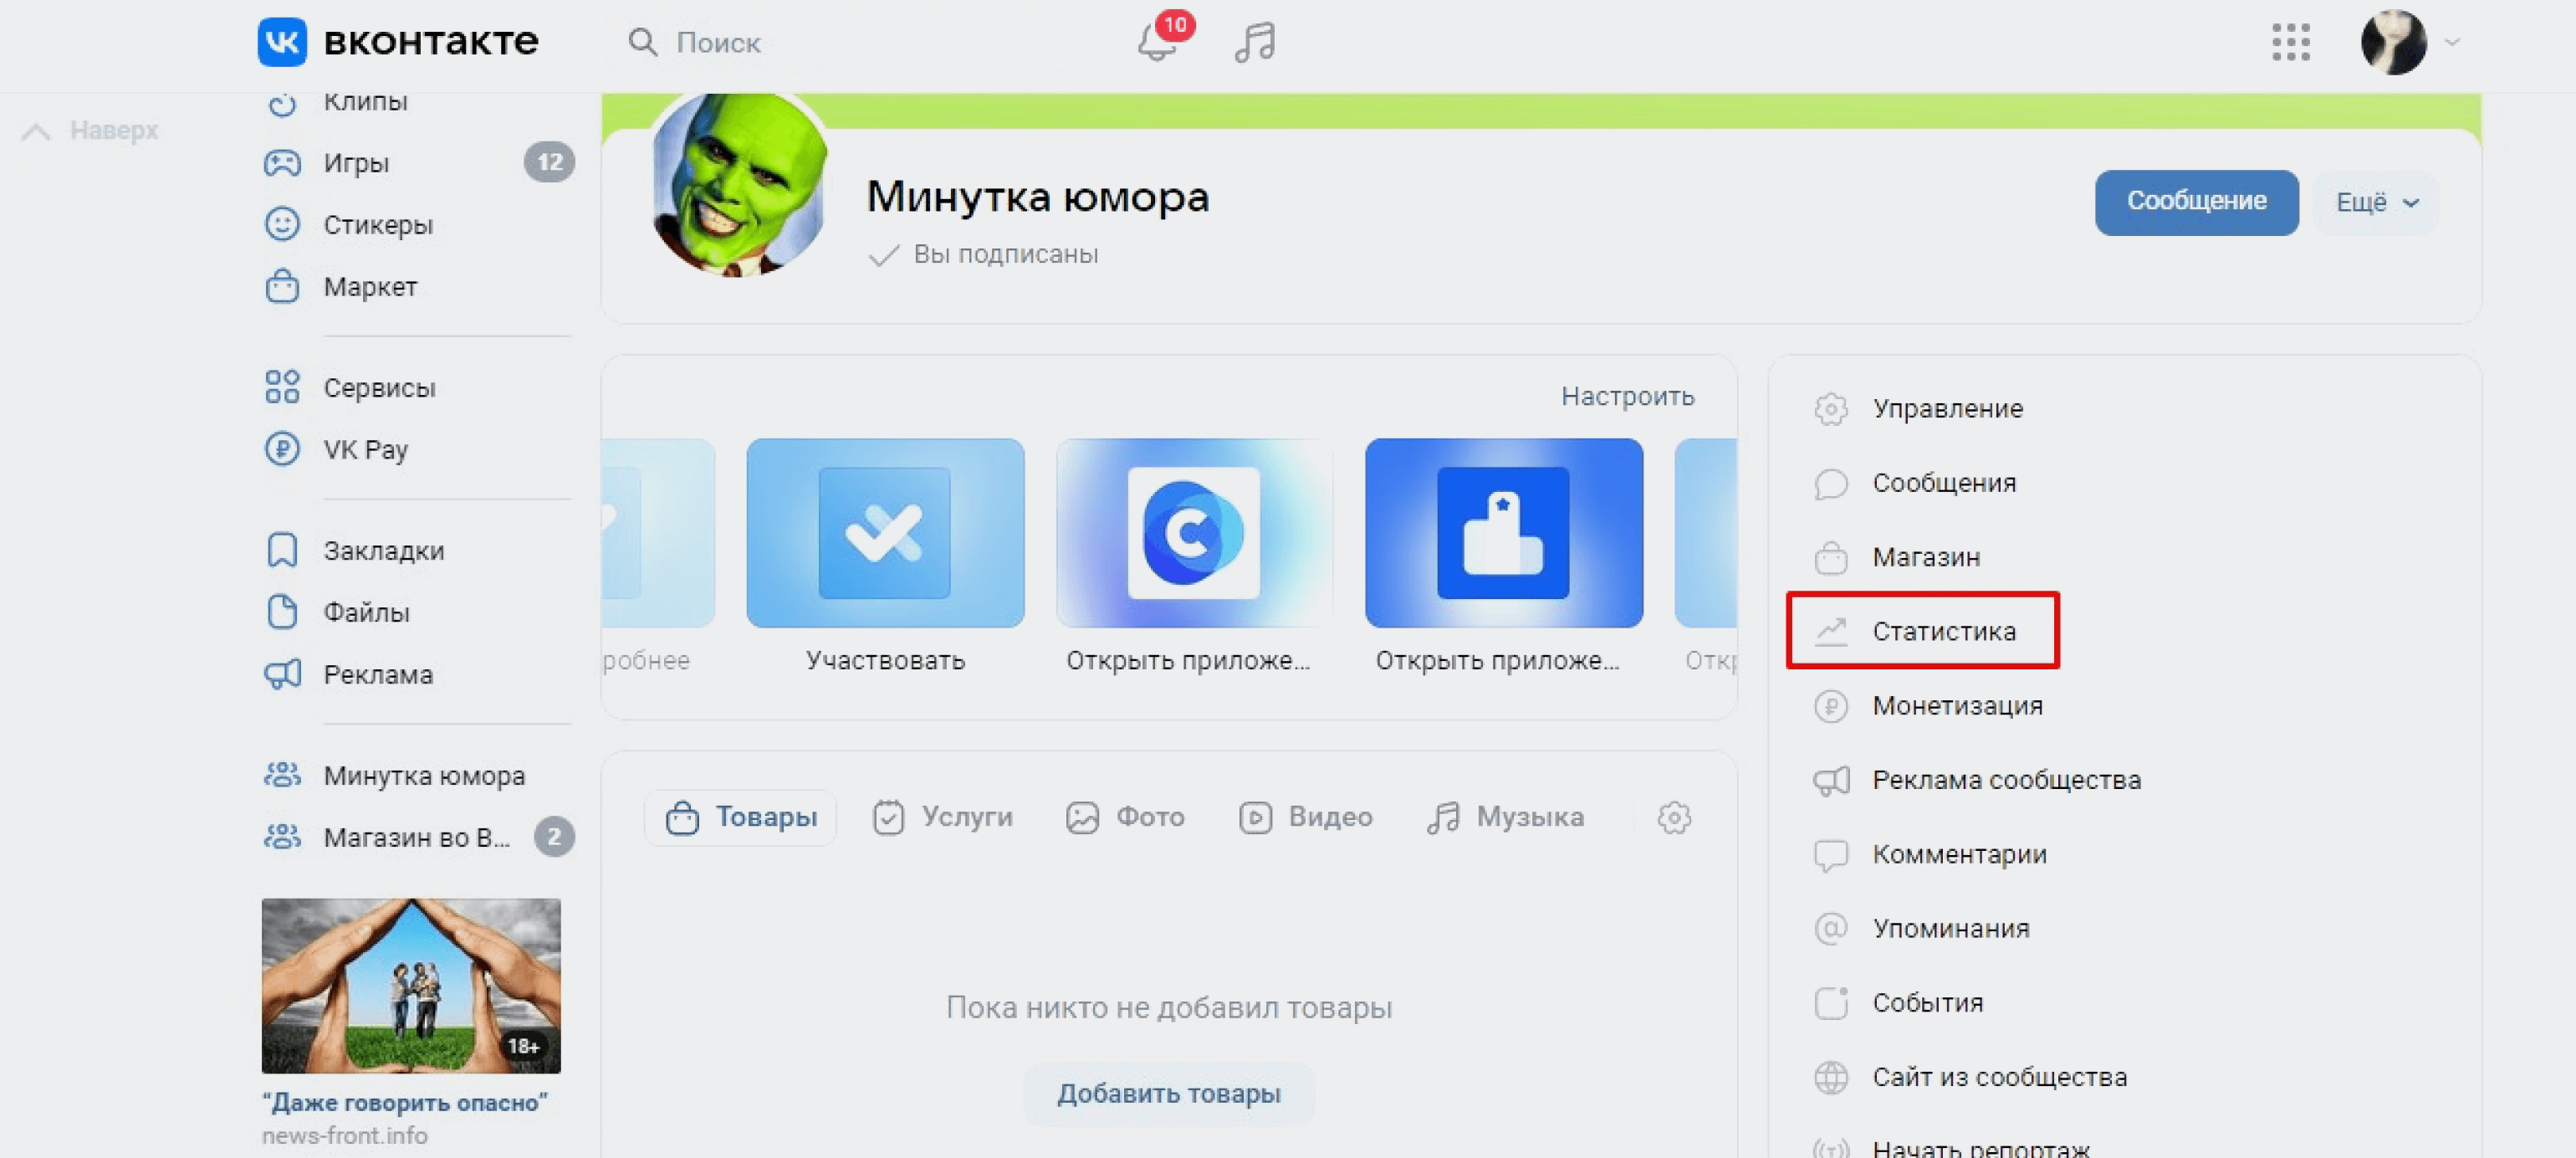 Статистика во «ВКонтакте»: где её найти и как анализировать / Skillbox Media